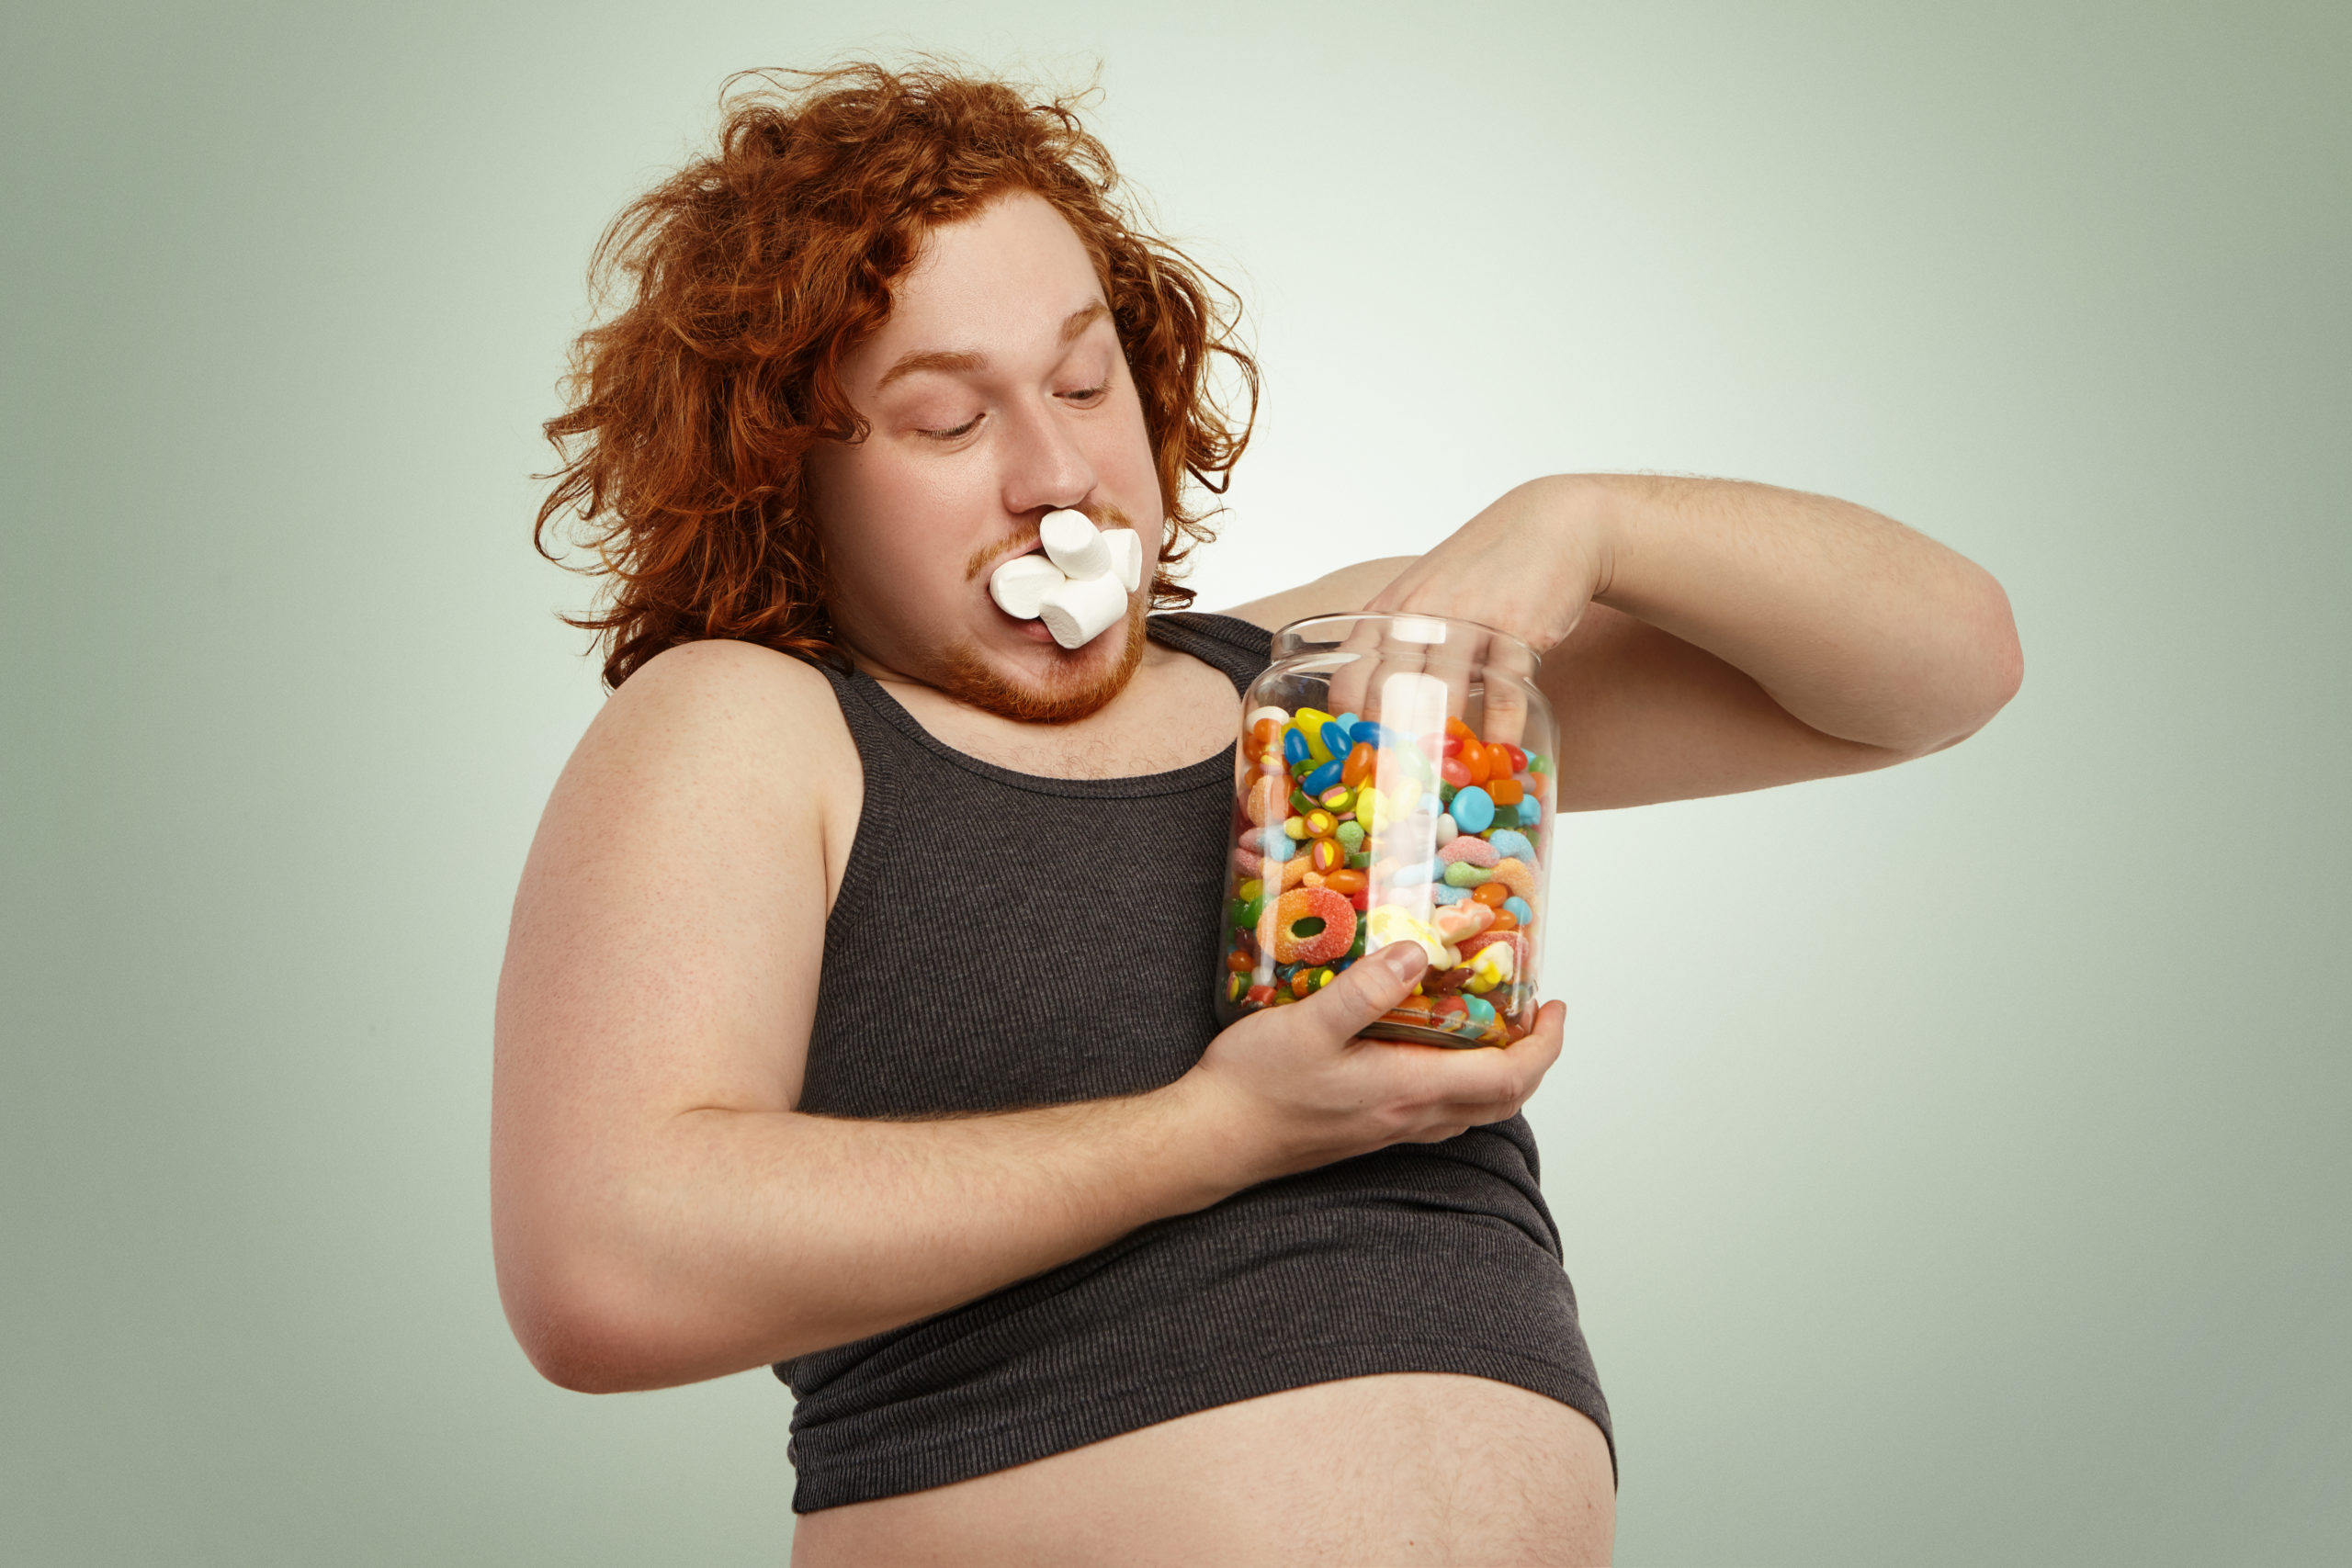 Coup de gueule : un spray anti-obésité pour que les gros perdent du poids.